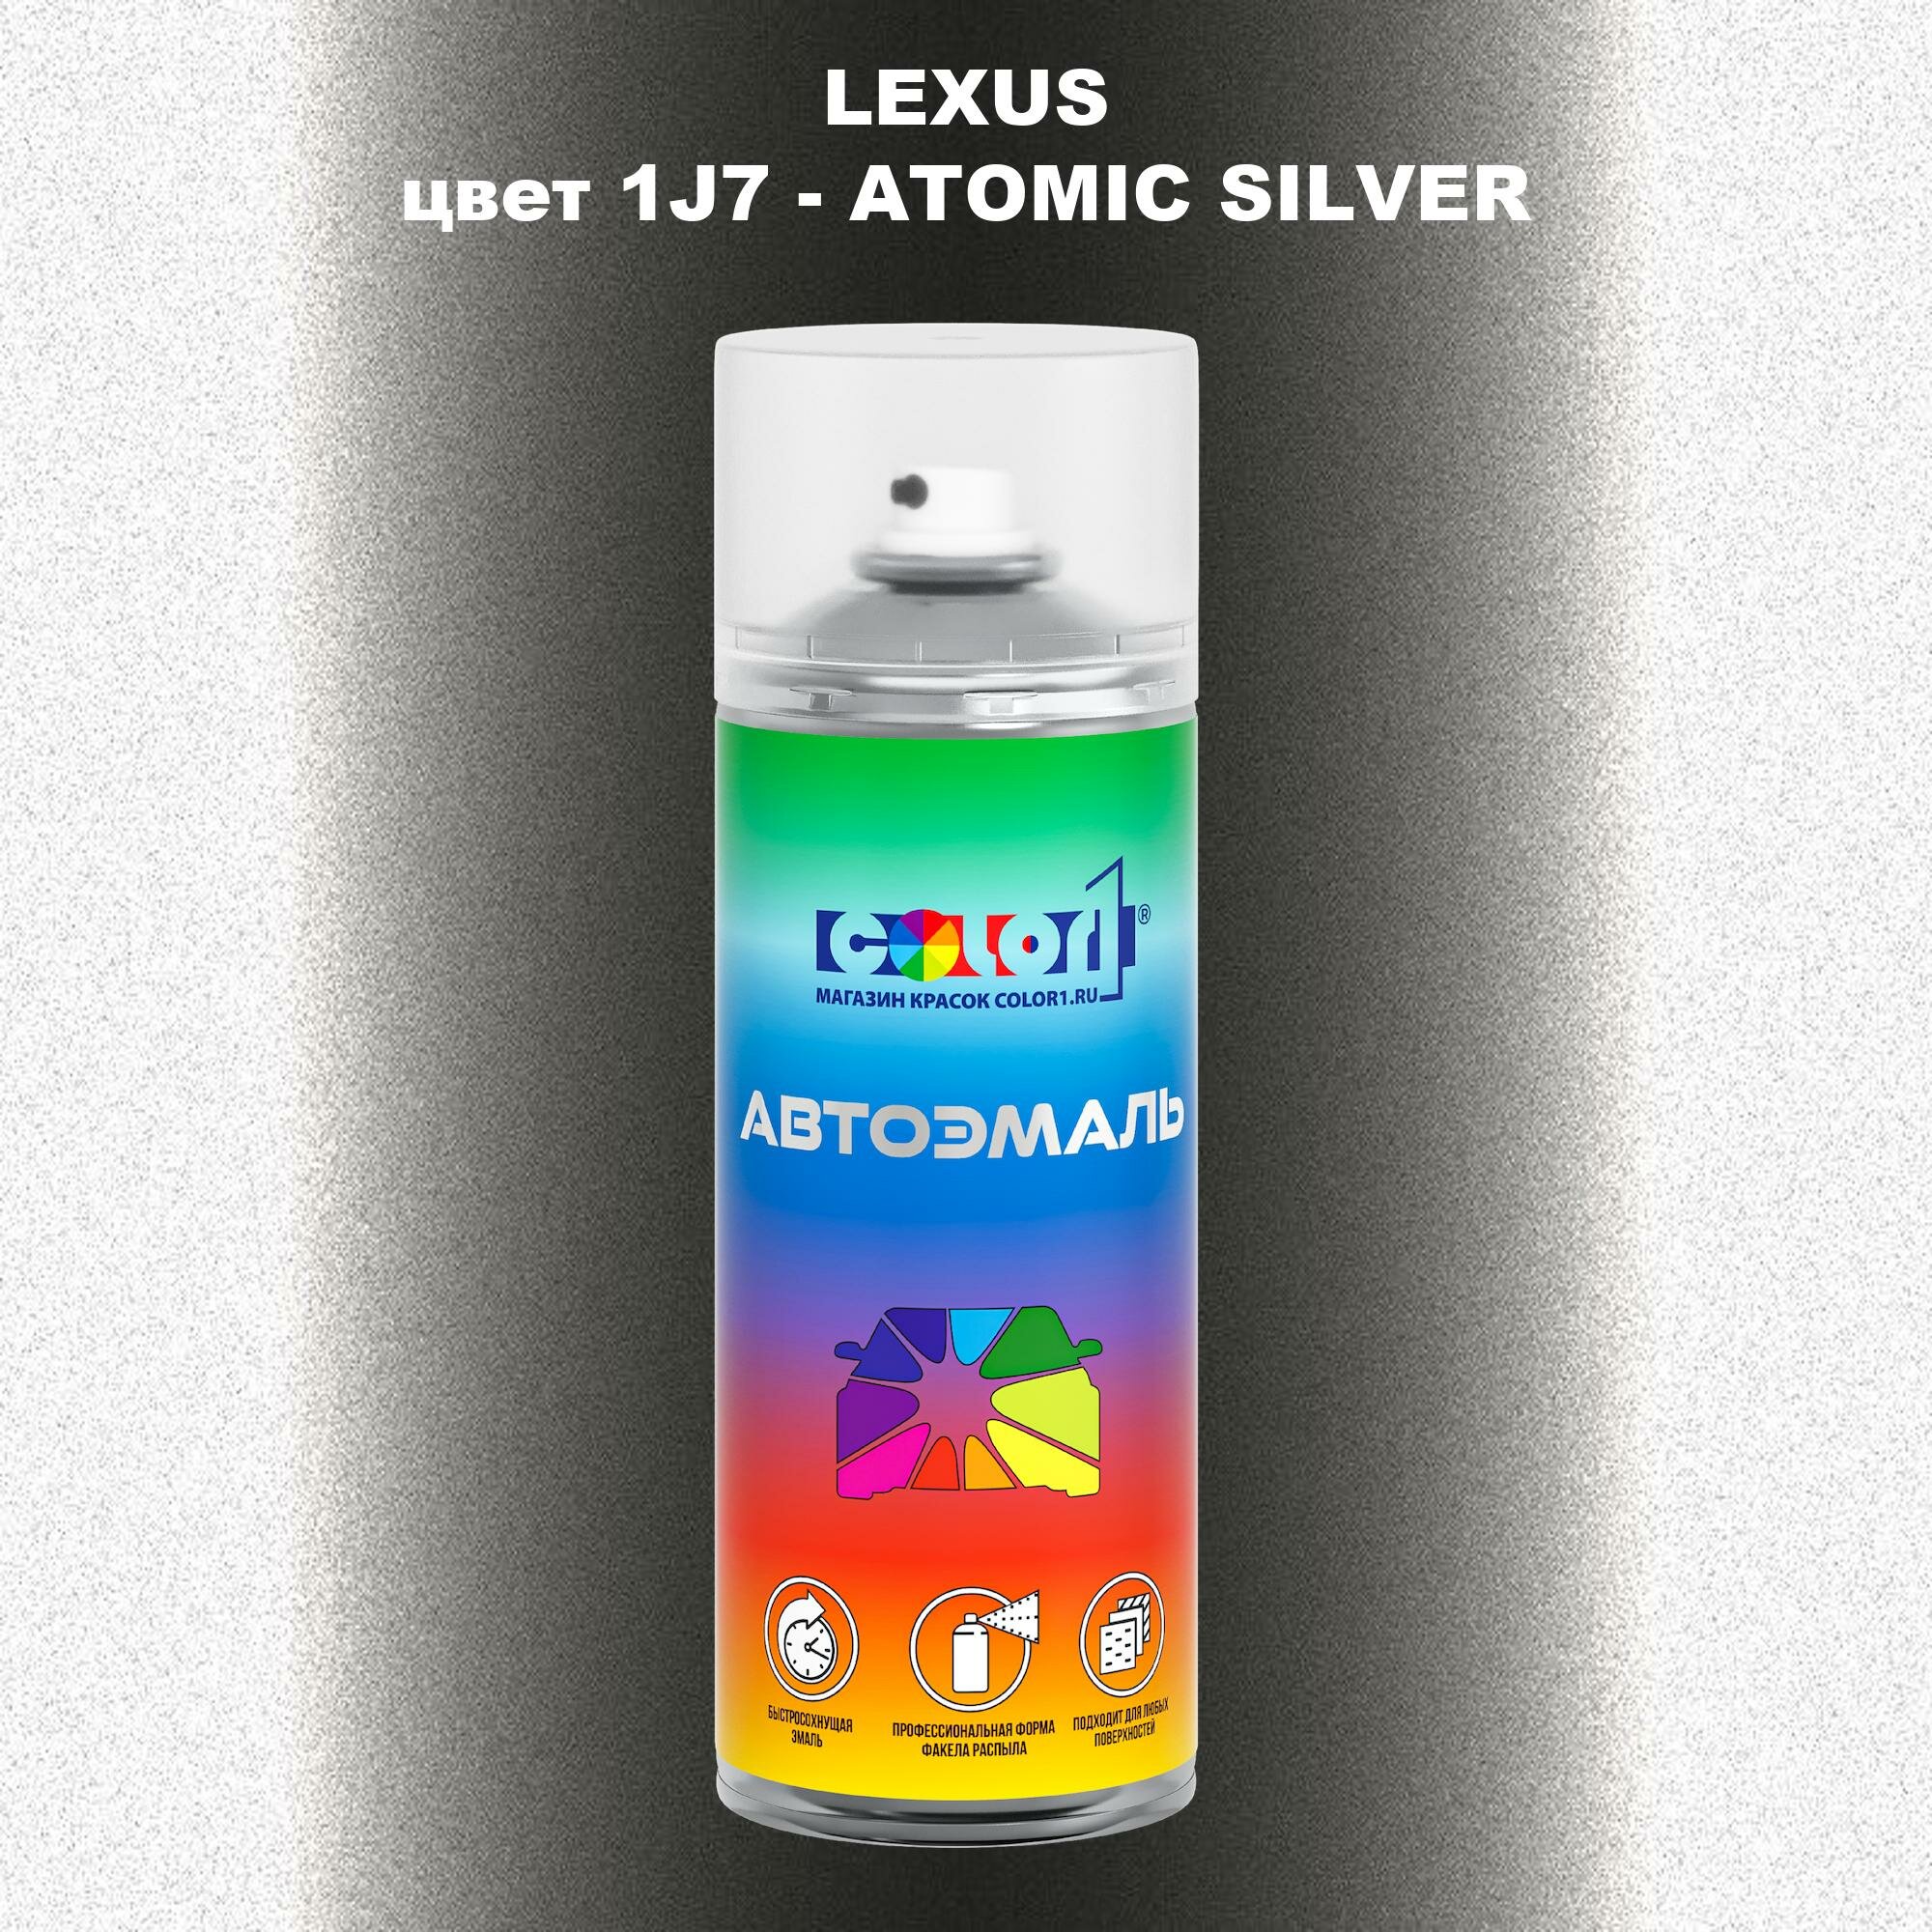 Аэрозольная краска COLOR1 для LEXUS, цвет 1J7 - ATOMIC SILVER